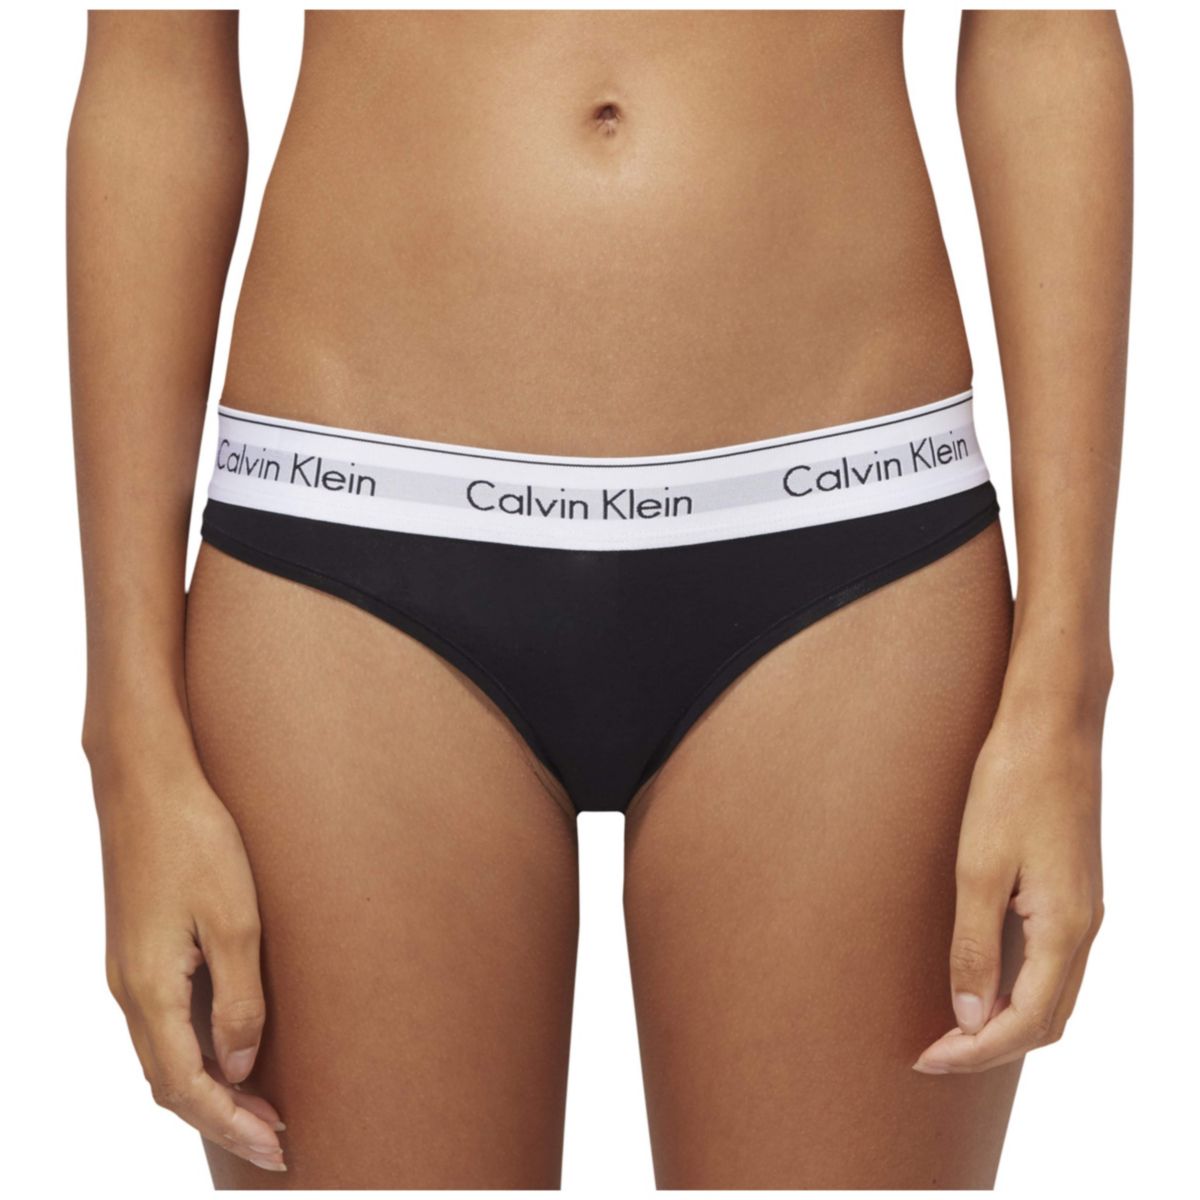 Calvin Klein Thong-white waist band F3786 001 Black/white waist